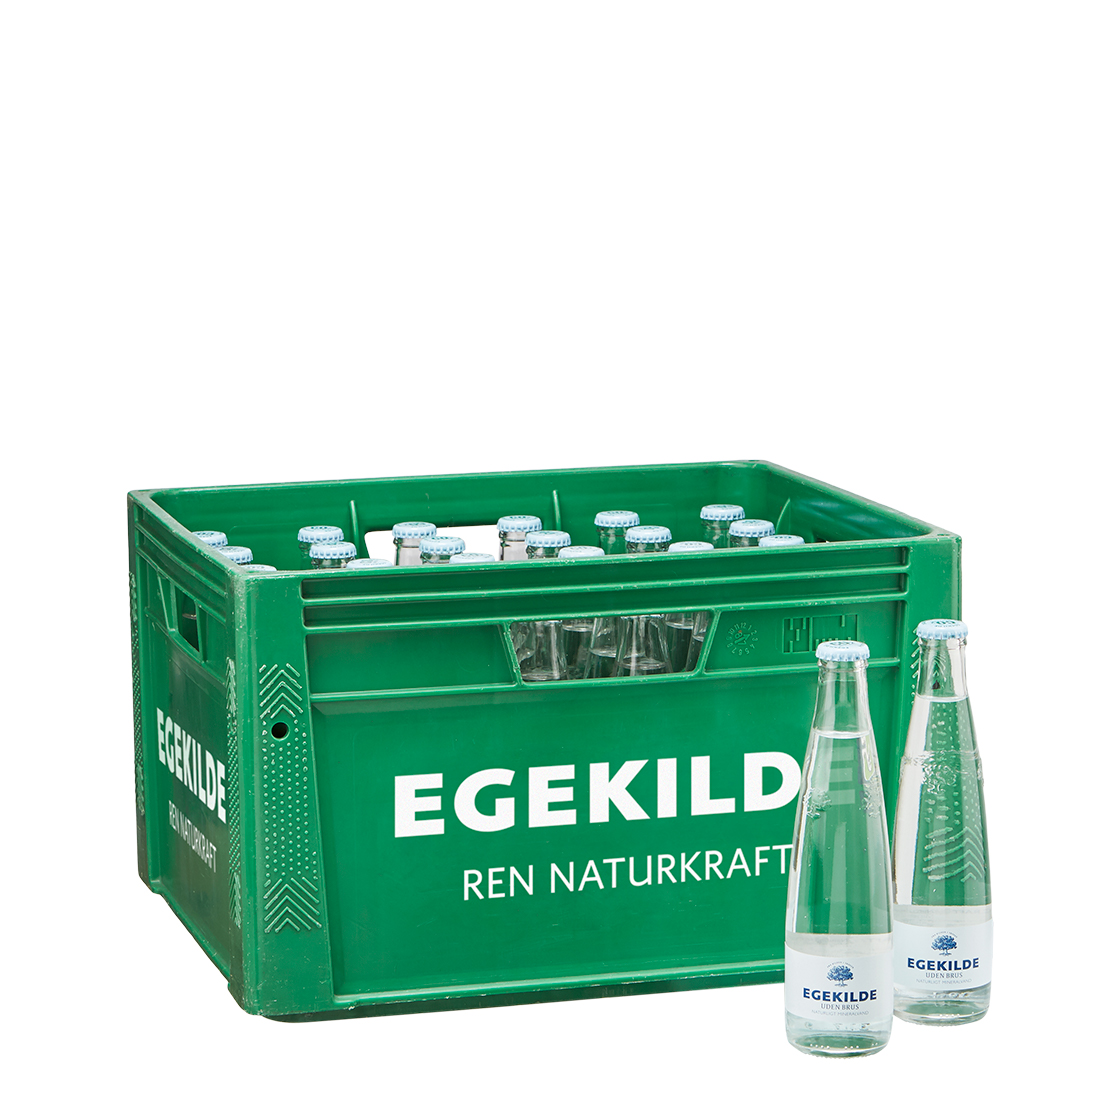 Egekilde Still 0,3L 30 BTL/CASE